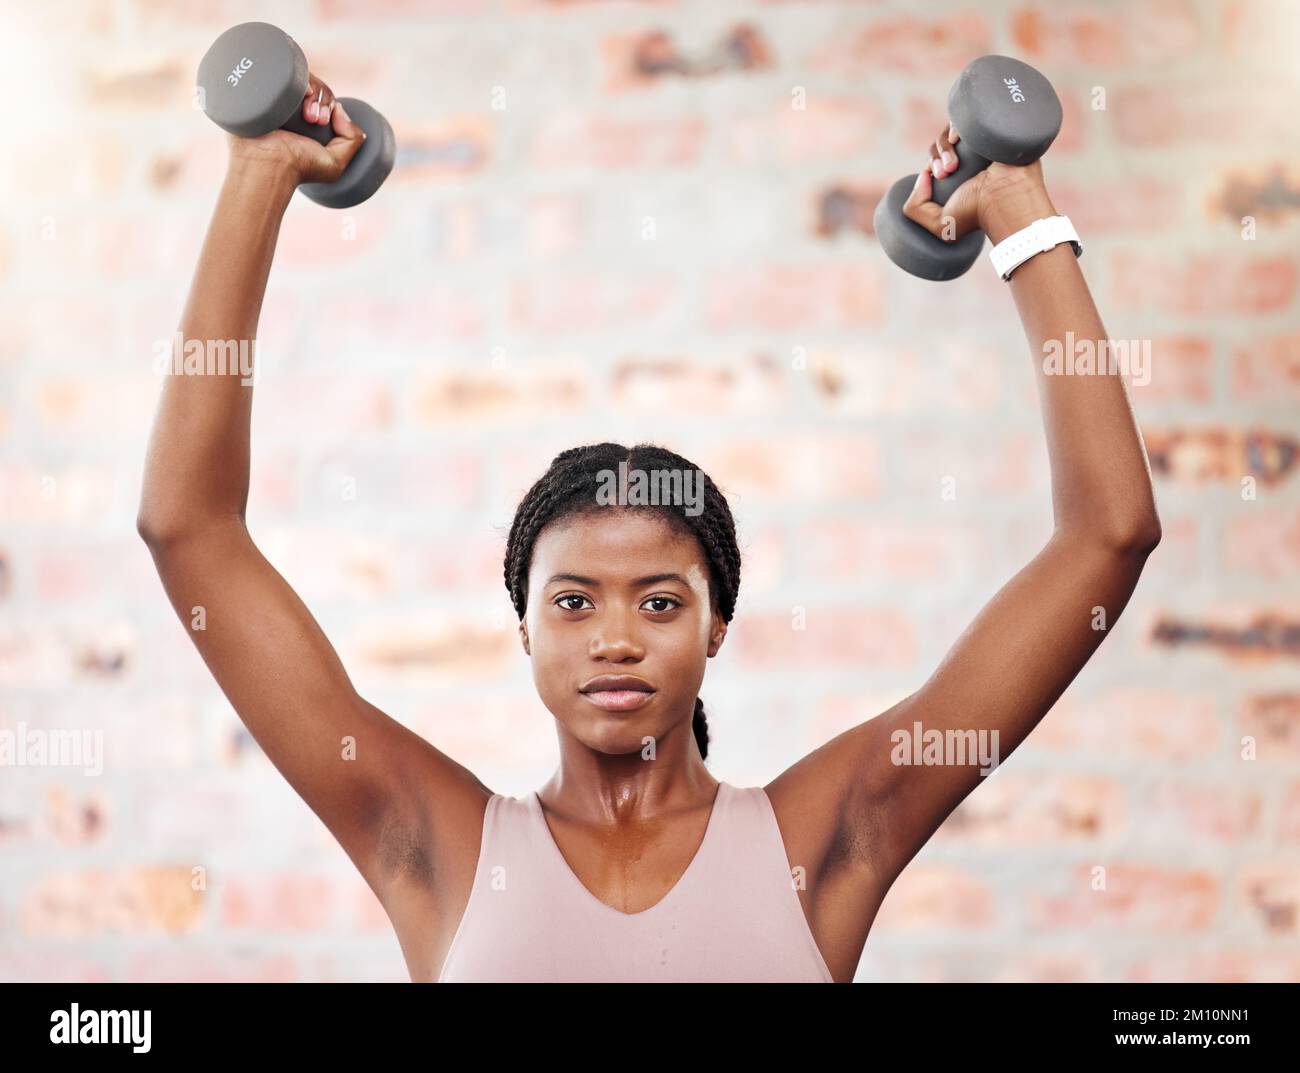 Entraînement de force, haltères de fitness et femme noire en salle de gym, exercice de santé et de motivation pour le but de corps. Fort, puissance et portrait d'un Africain Banque D'Images